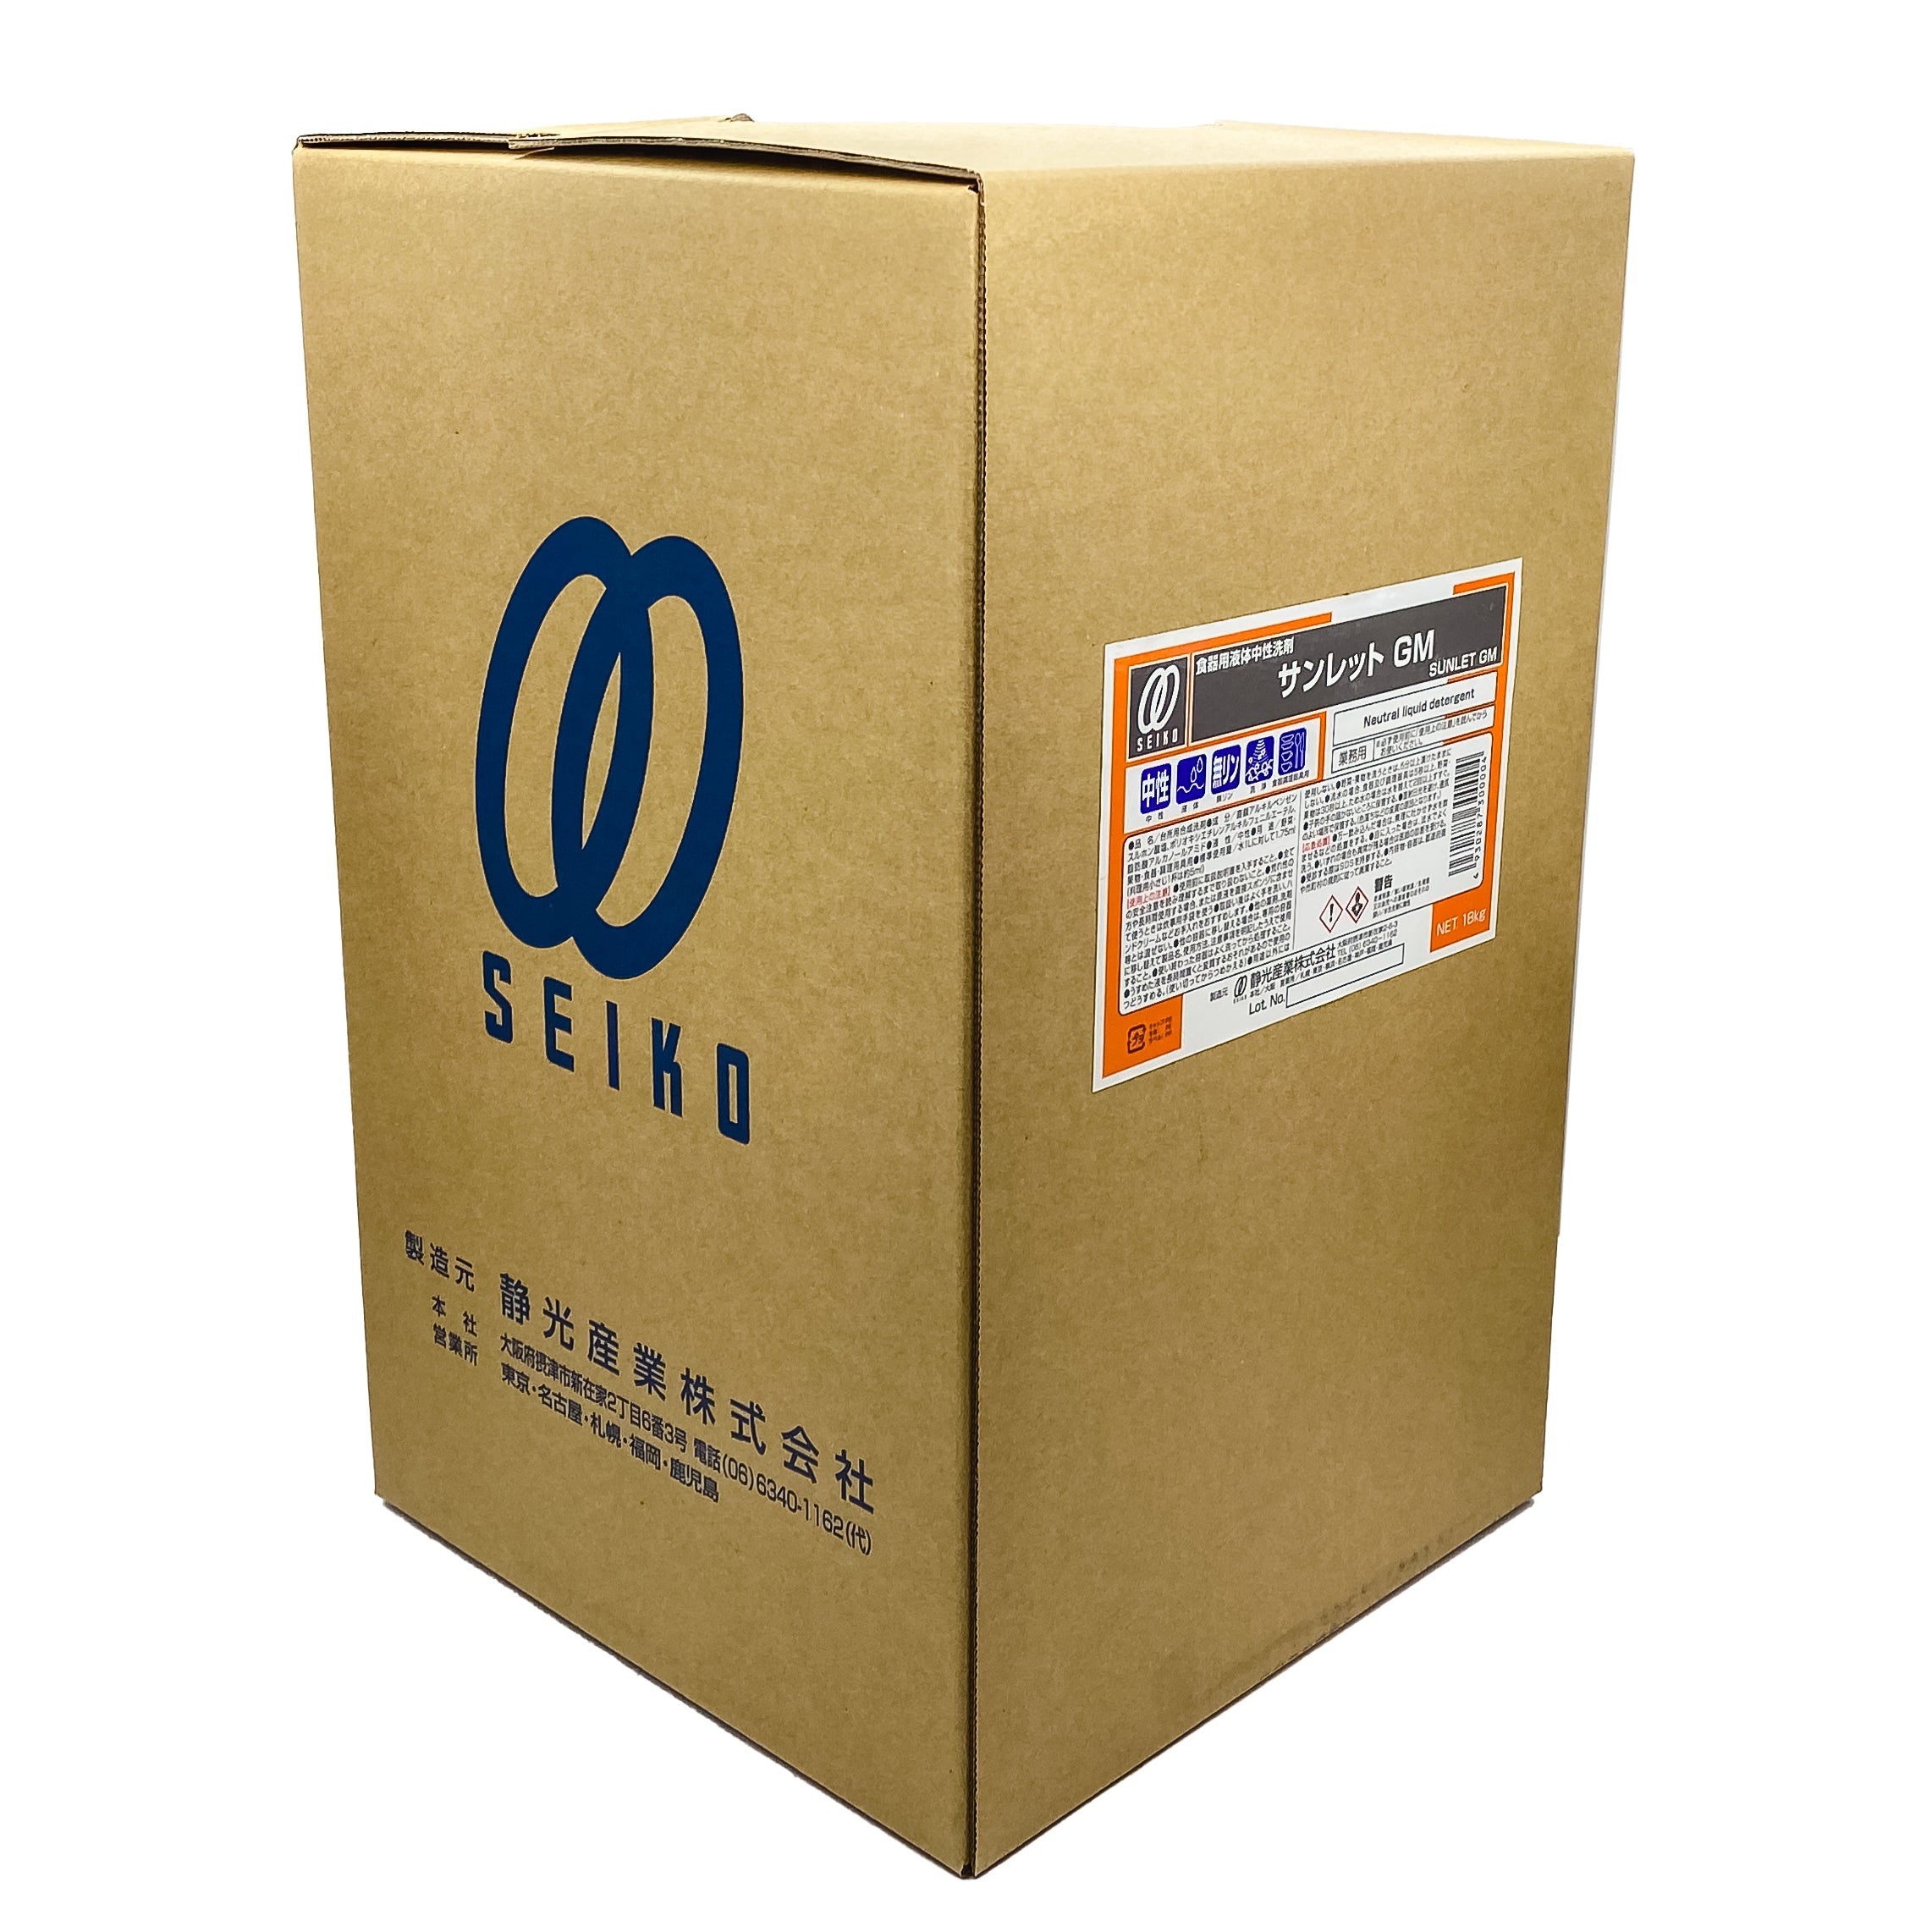 【中性洗剤】静光産業 サンレット GMタフテナー 18kg